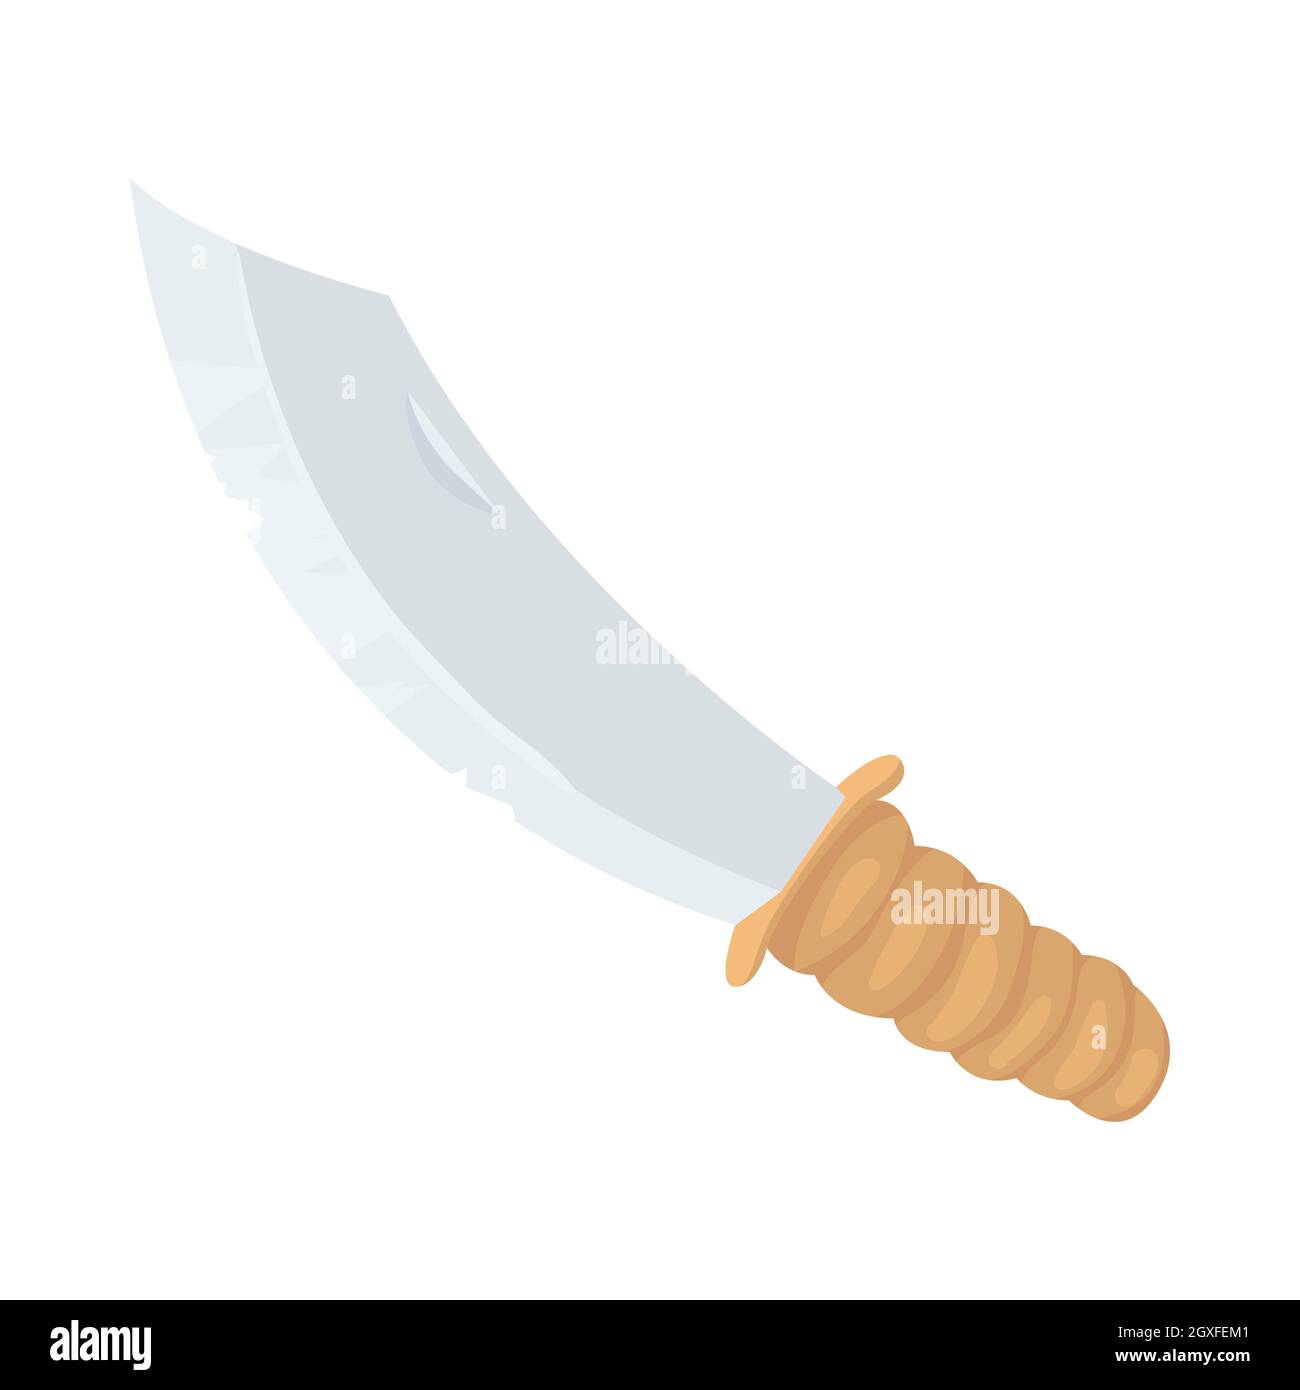 Icono de machete de caza en estilo de dibujos animados aislado sobre fondo blanco. Símbolo de armas Foto de stock